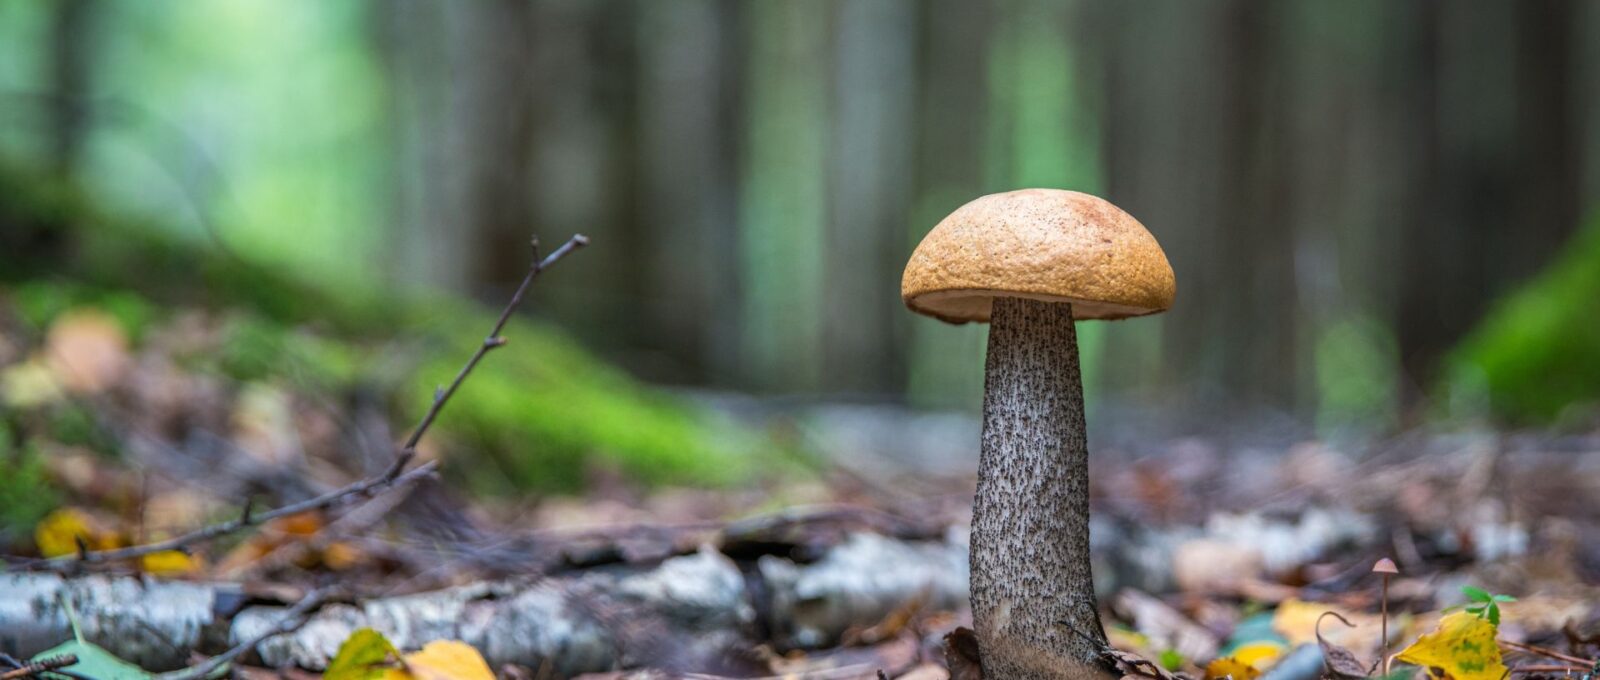 penis shaped like mushroom